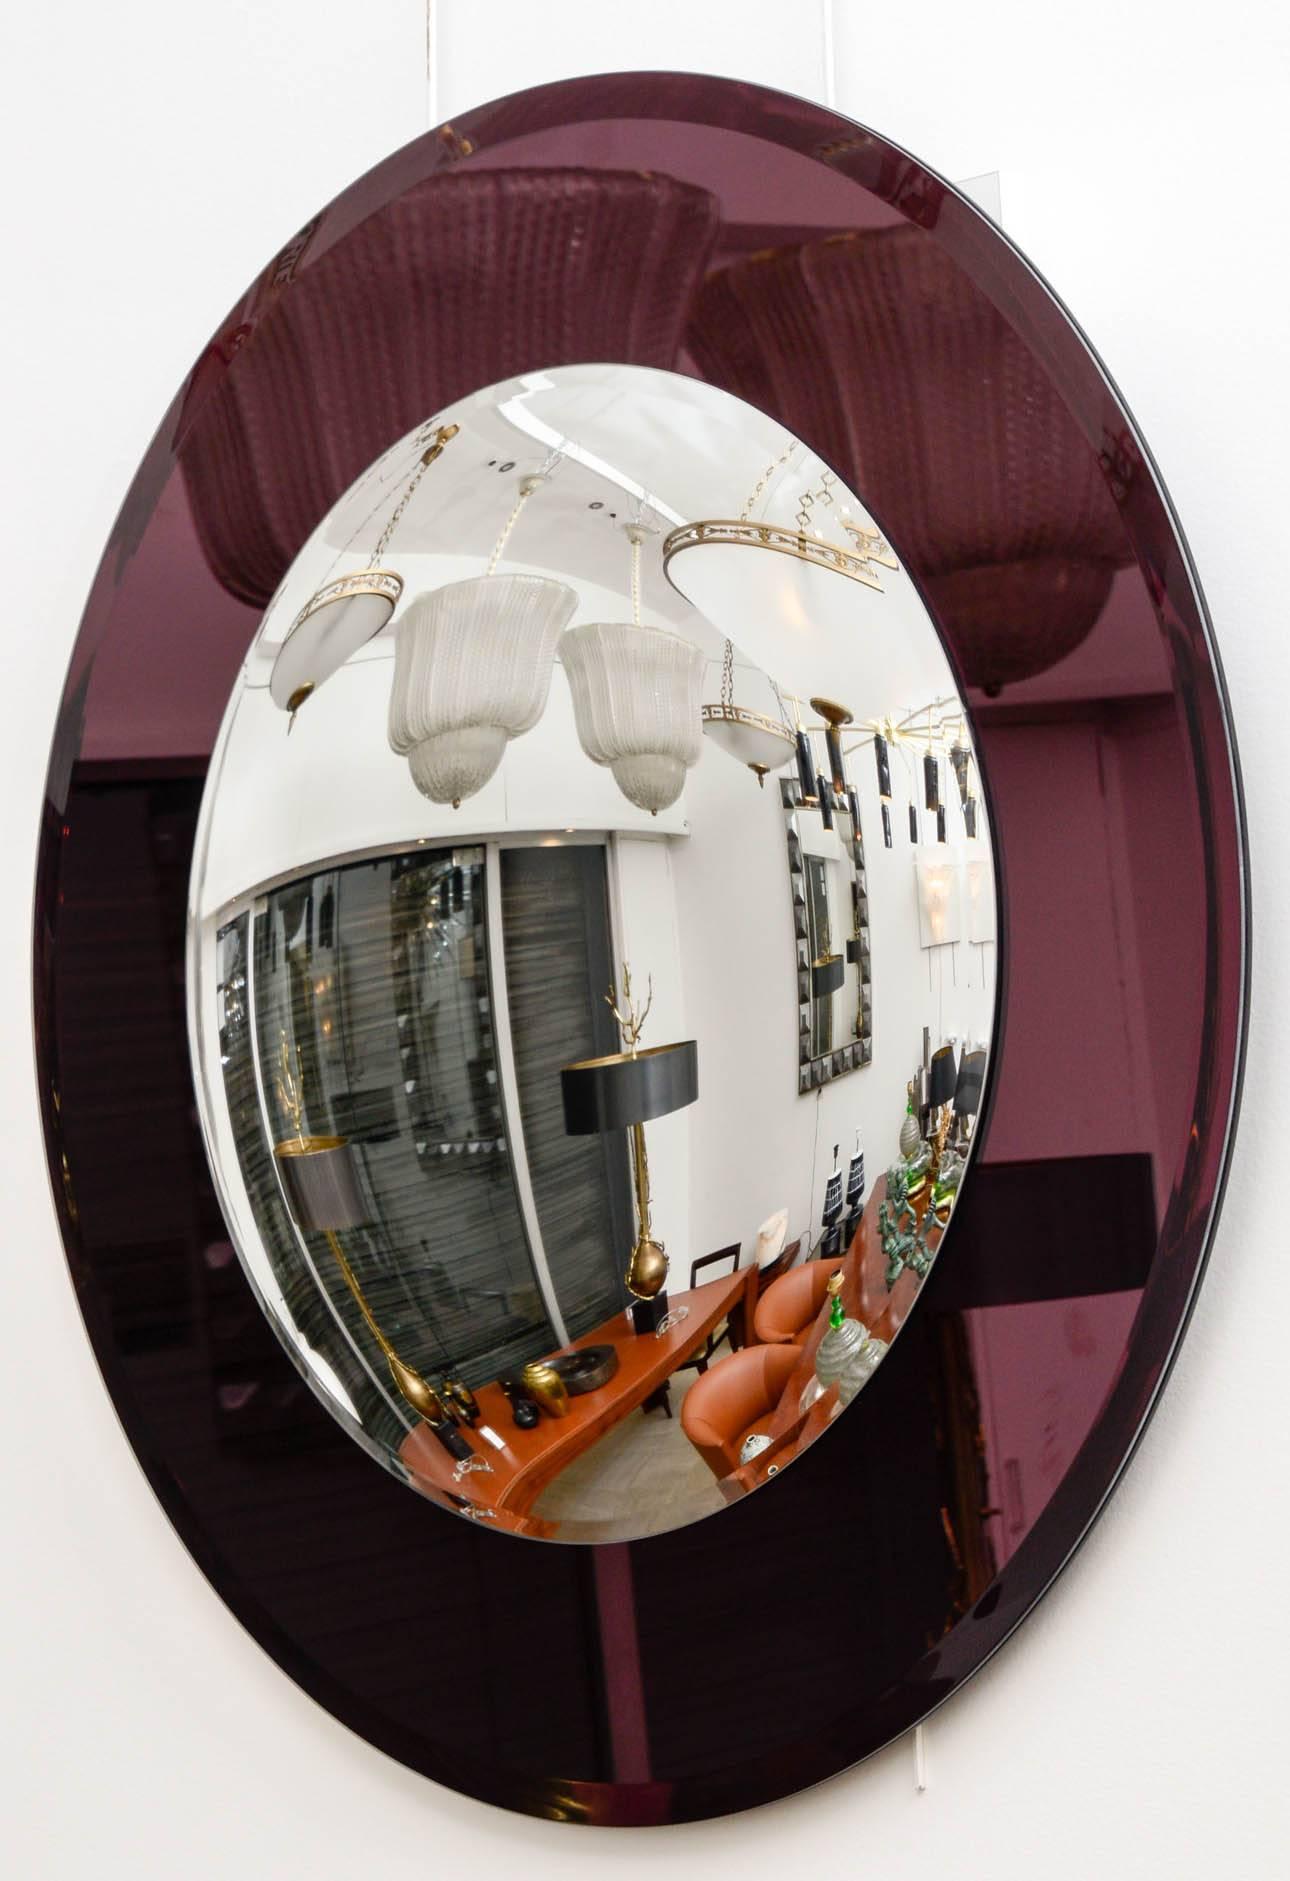 Convex mirror.
Mauve circumference, mercury silvering.
Contemporary design.